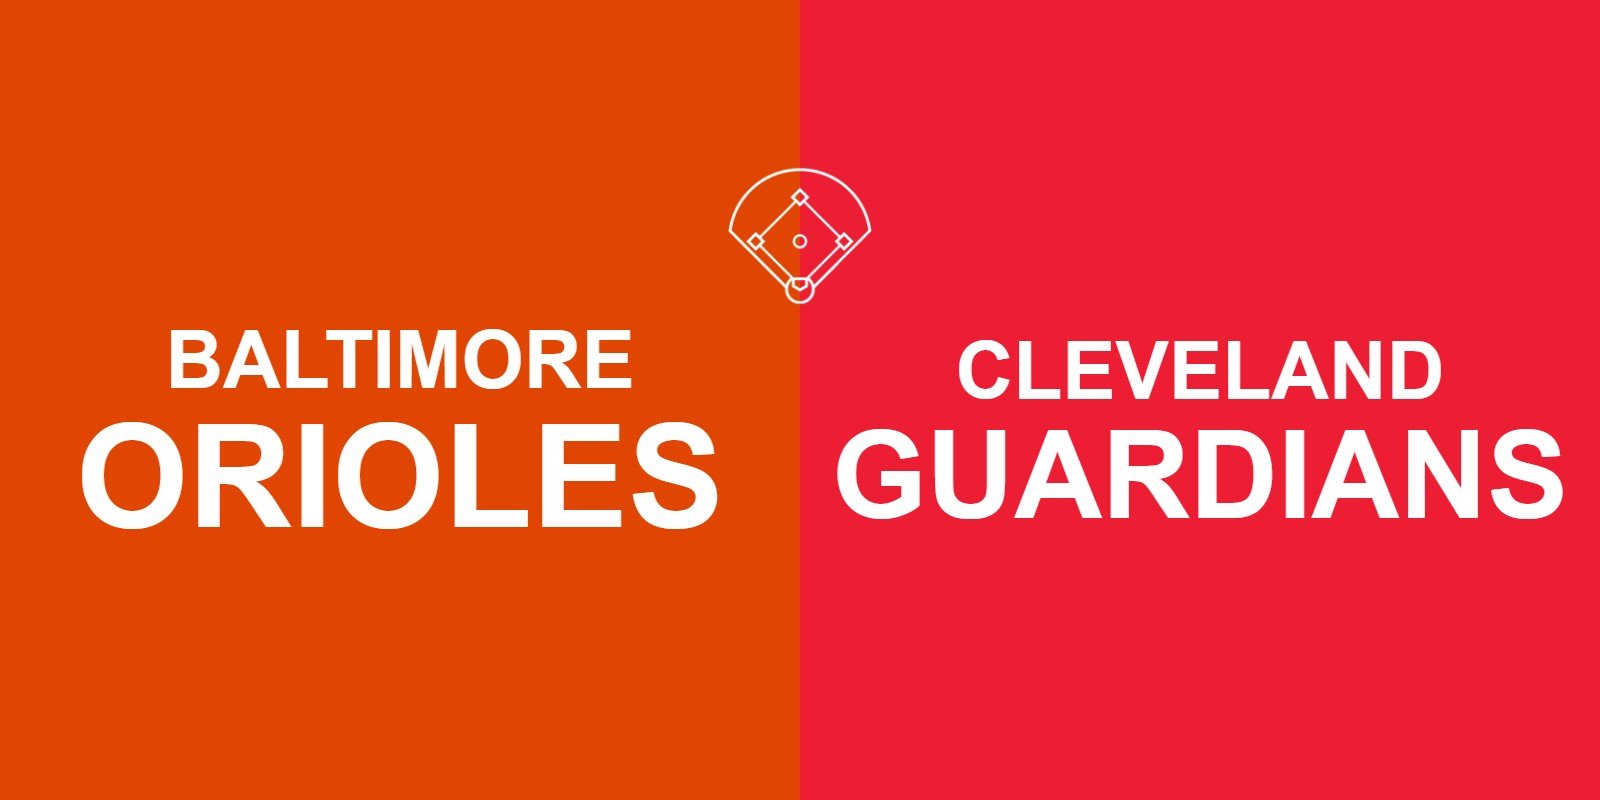 Orioles vs Guardians